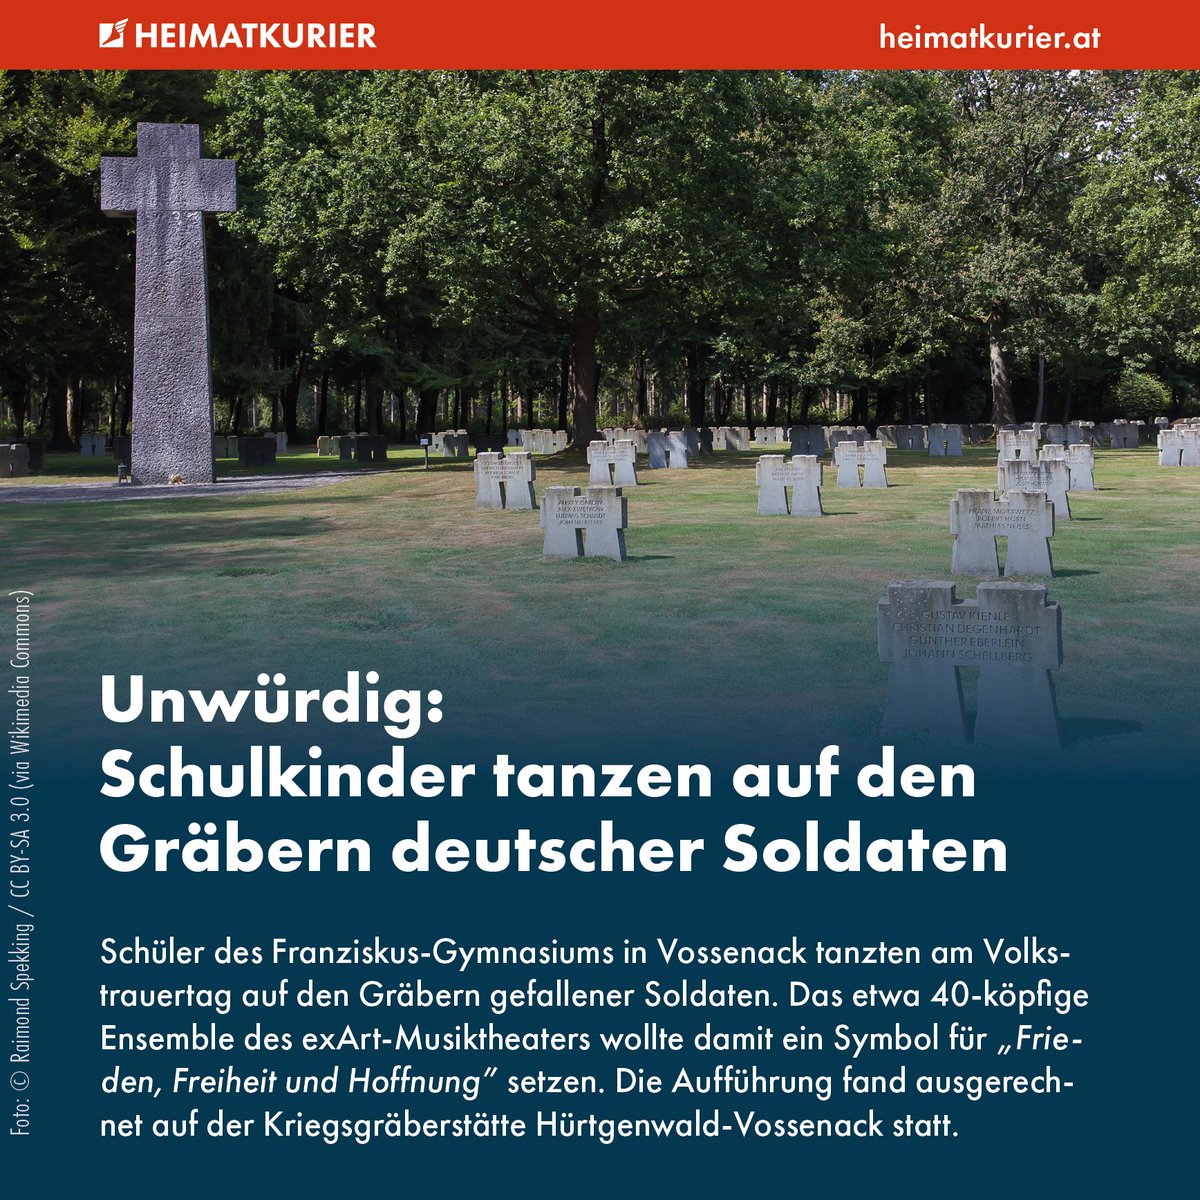 Der Soldatenfriedhof in Vossenack beherbergt die Ruhestätte von 2.221 Soldaten, die in der Schlacht im Hürtgenwald gefallen sind. Der Landkreis Düren versuchte sich am diesjährigen Volkstrauertag an einem neuen „Konzept”, um „viel mehr Menschen” für die Veranstaltung zu…